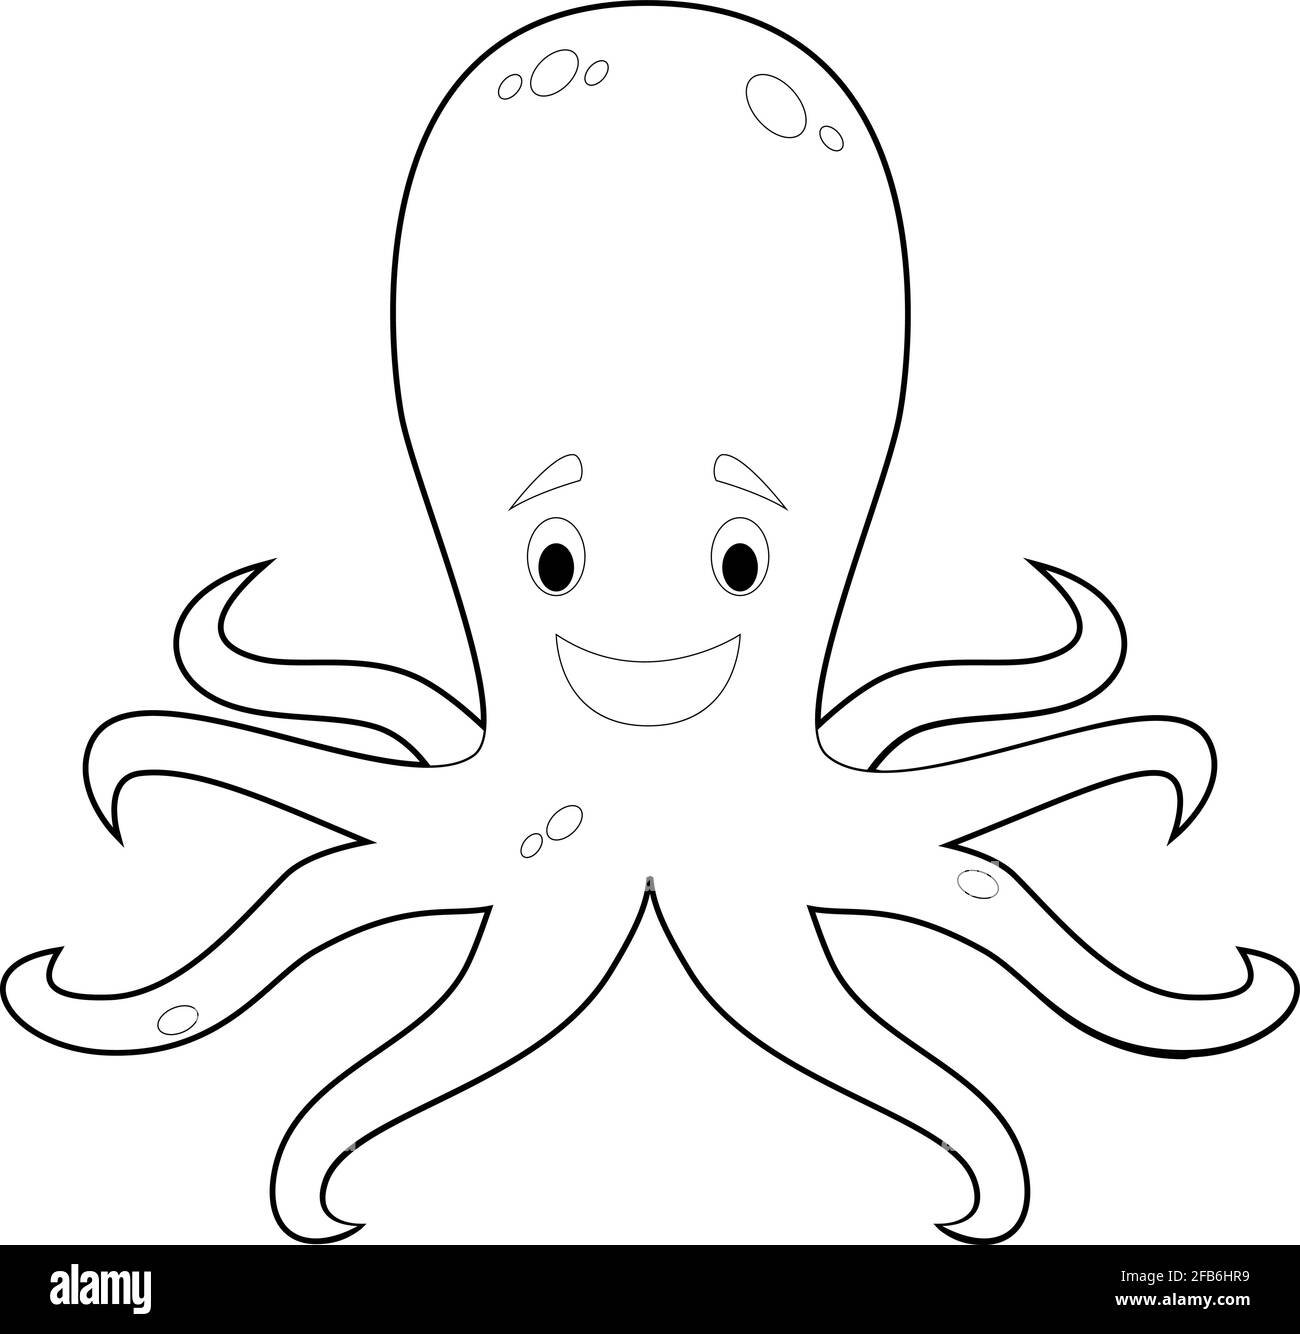 Раскраска голова осьминога для детей